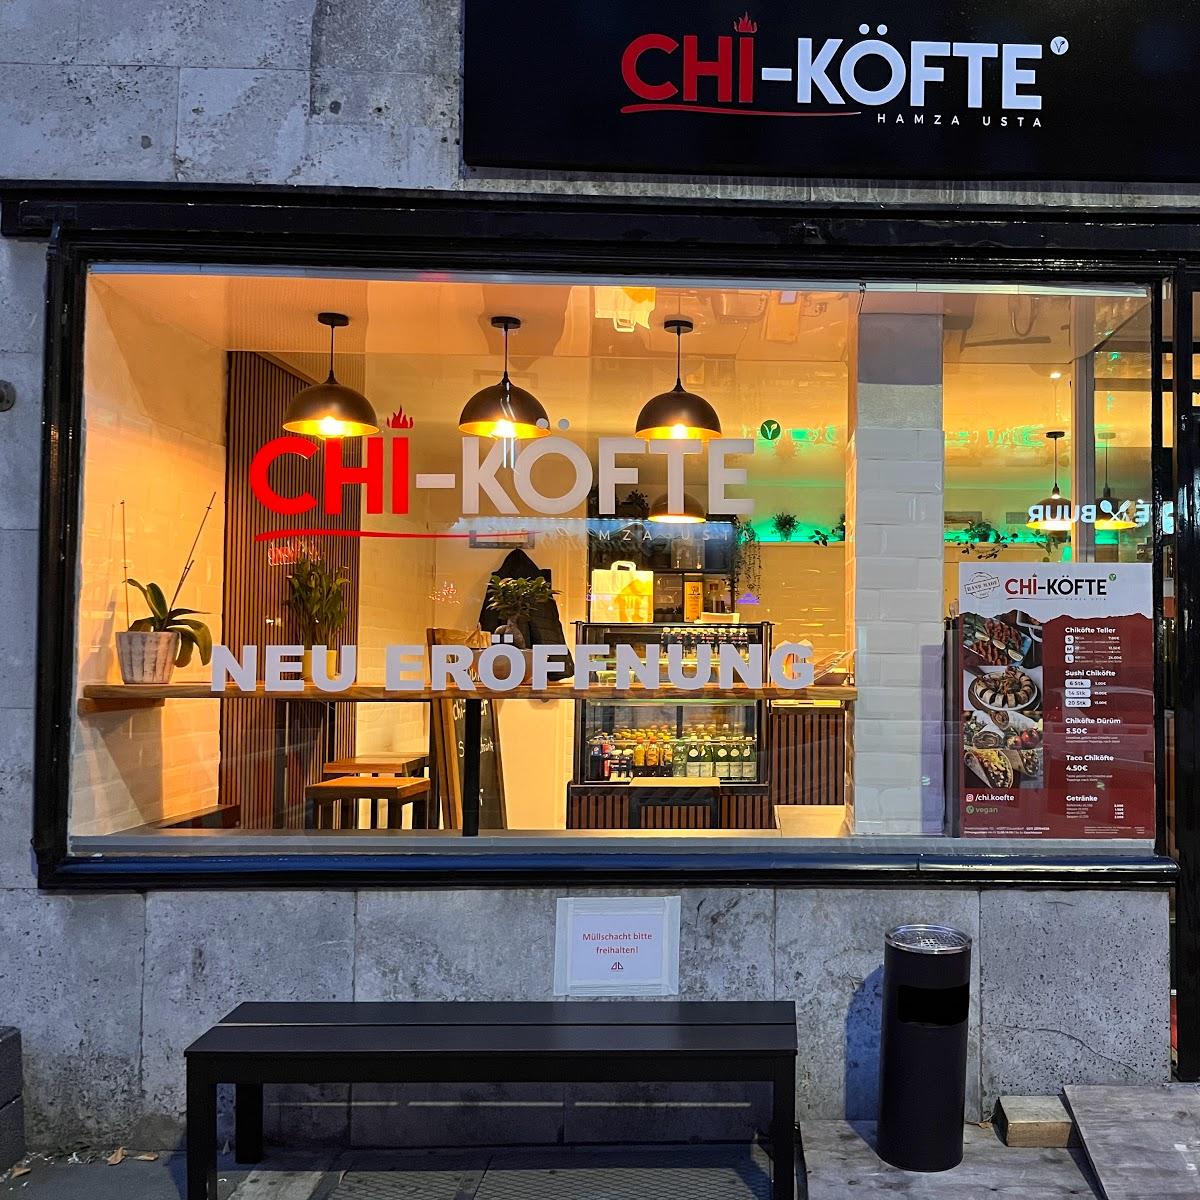 Restaurant "Chi-Köfte" in Düsseldorf